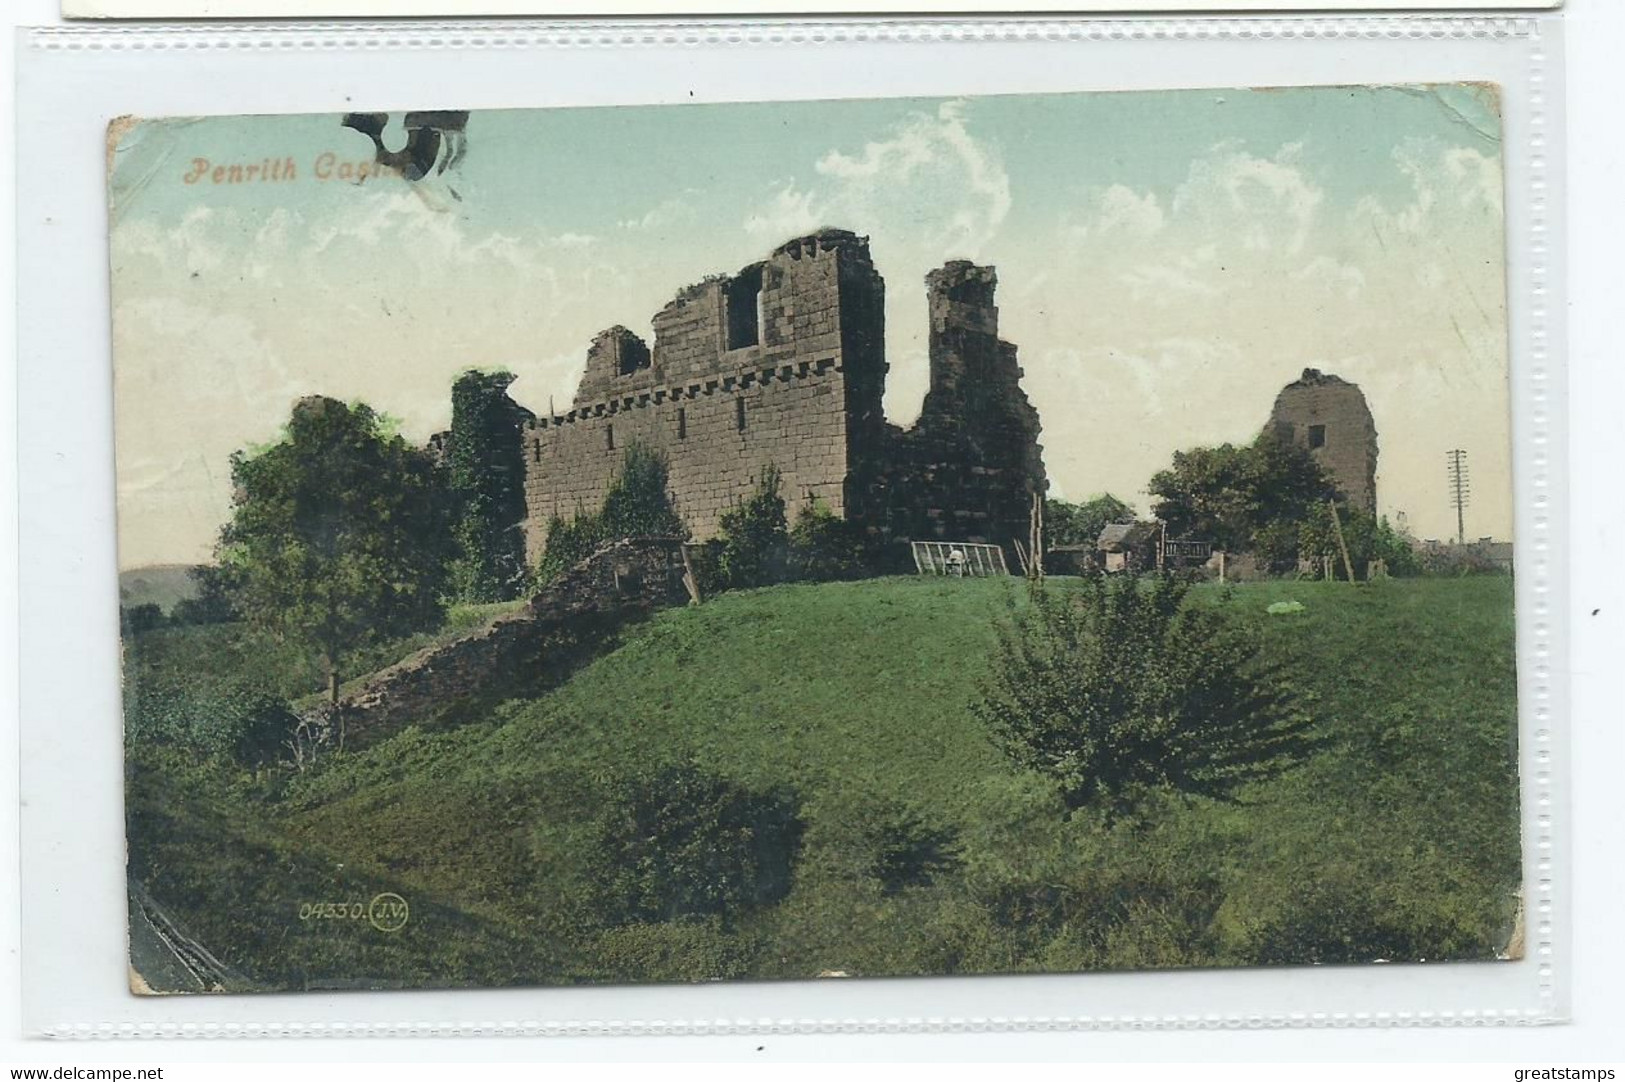 Postcard  Cumbria Penrith Castle Posted 1909 - Penrith